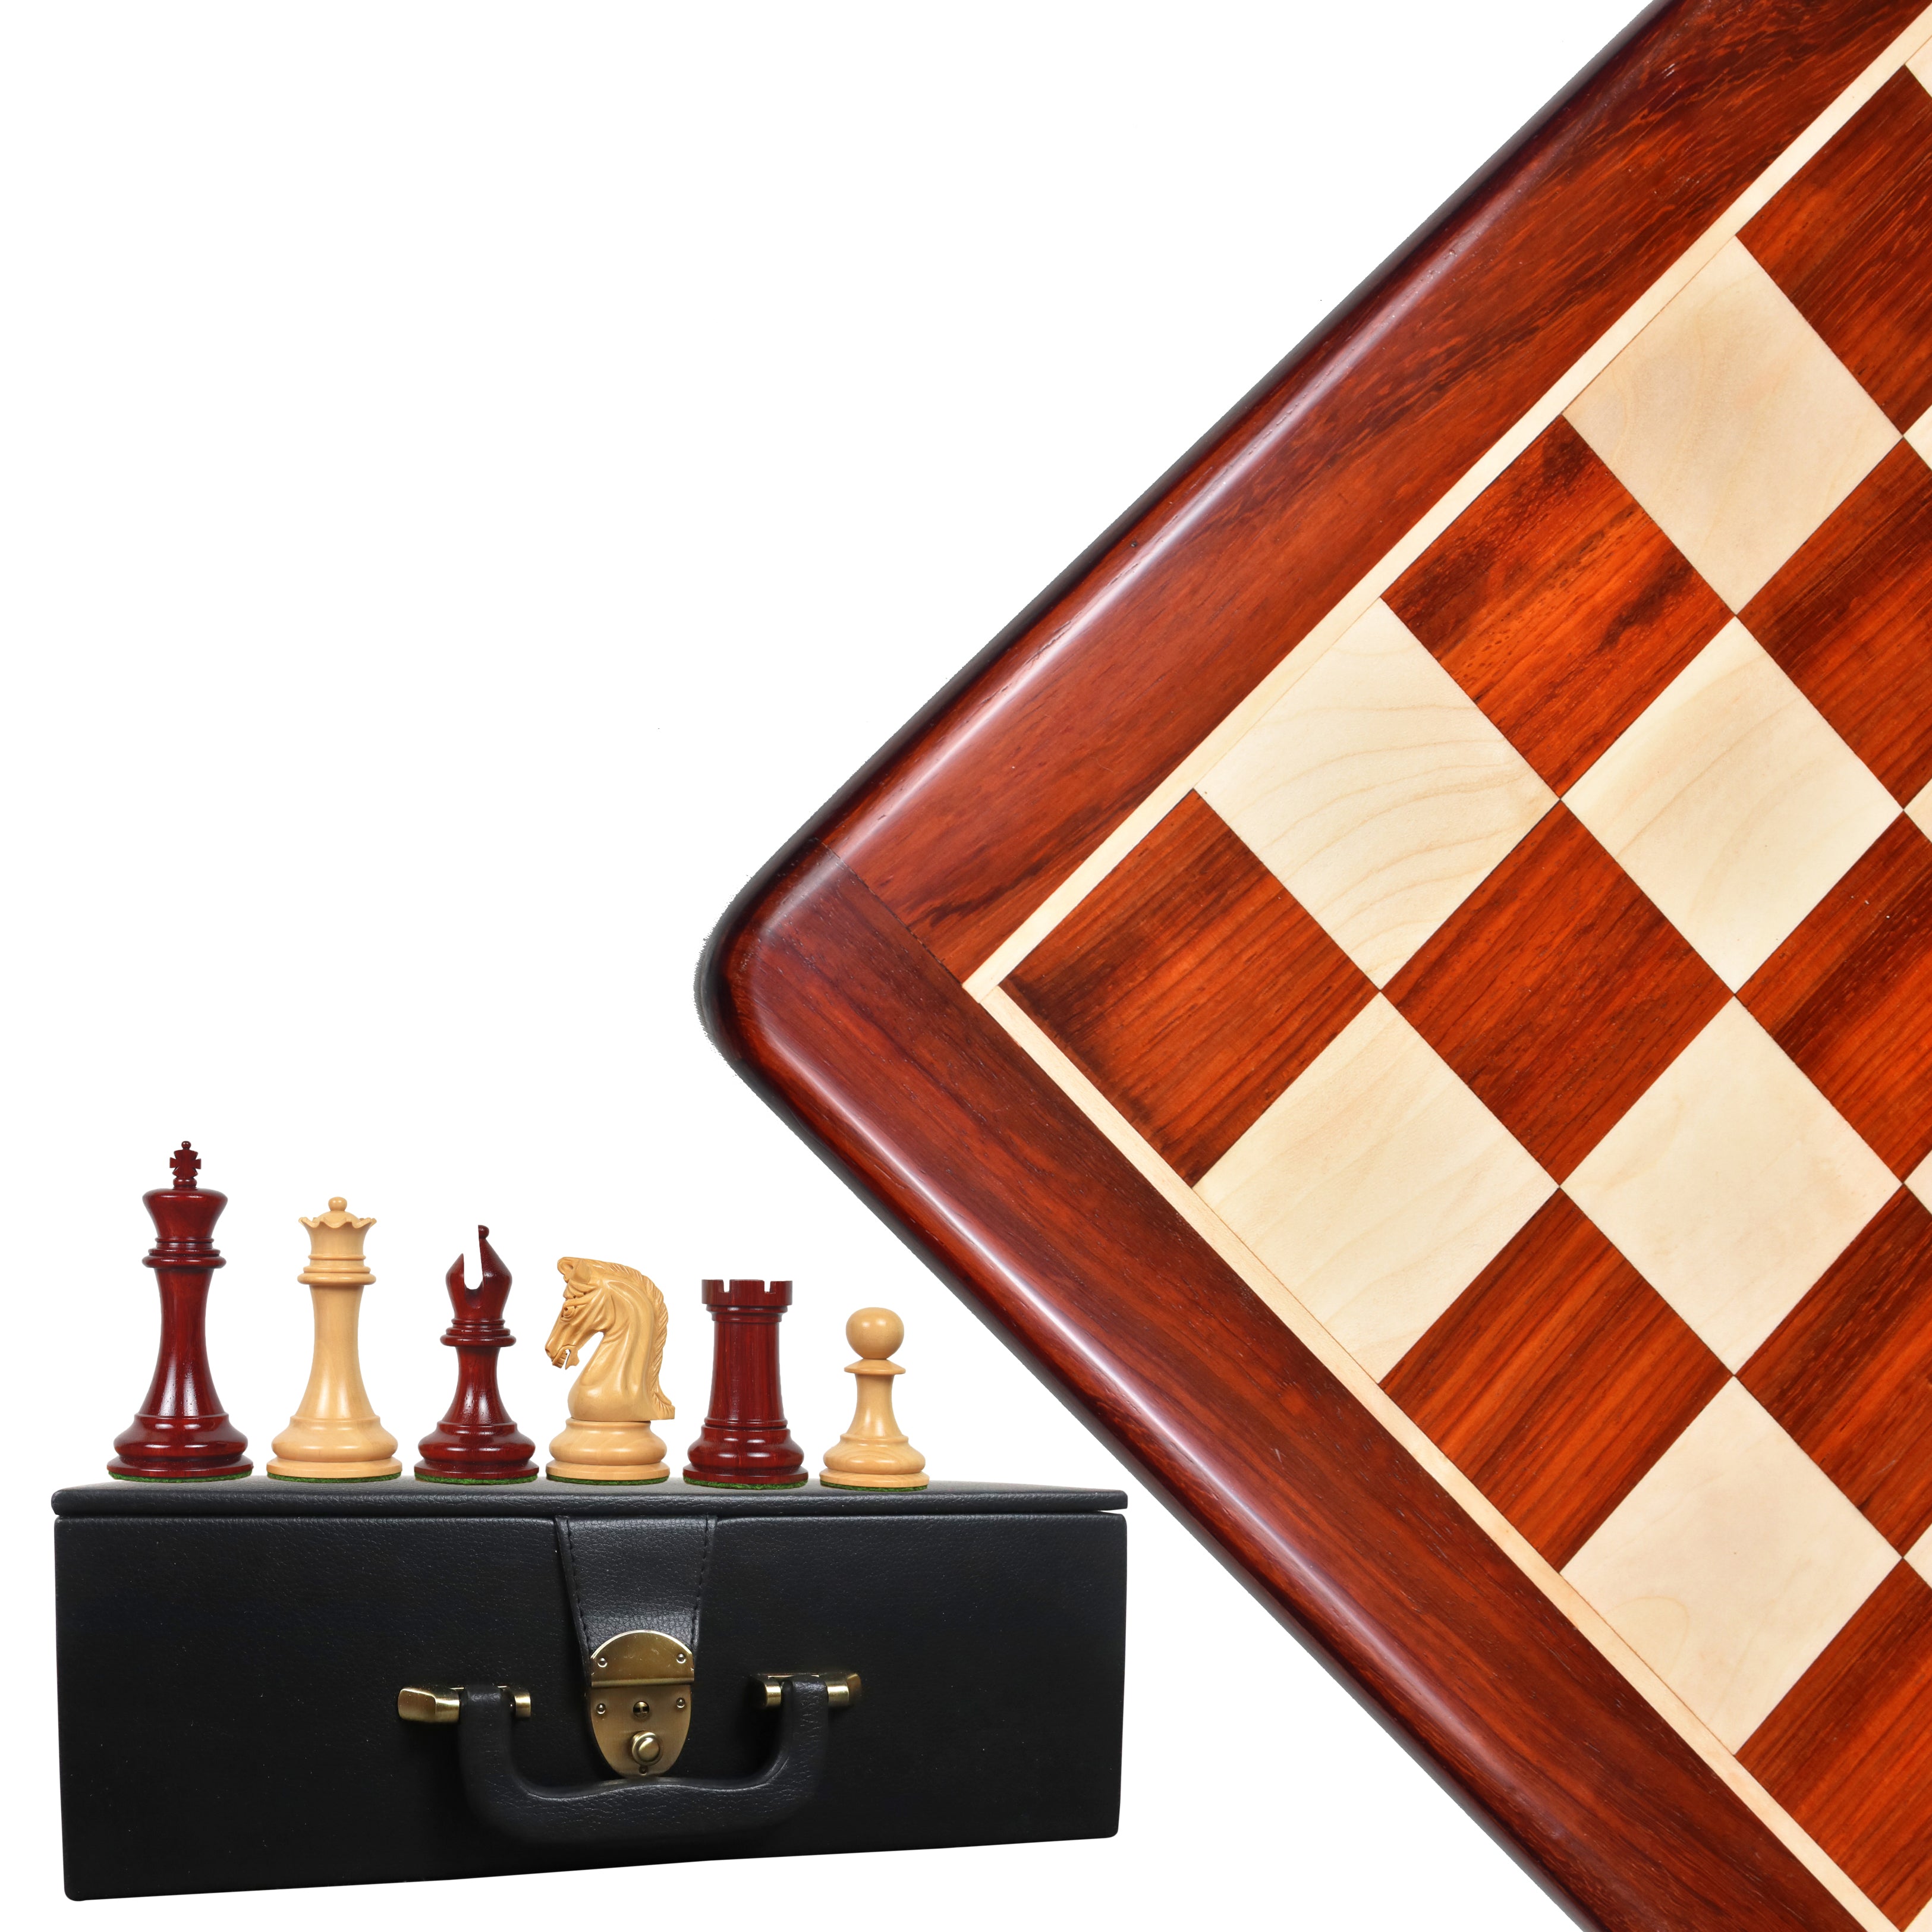 Luxury Chess Set | Royal Chess Mall